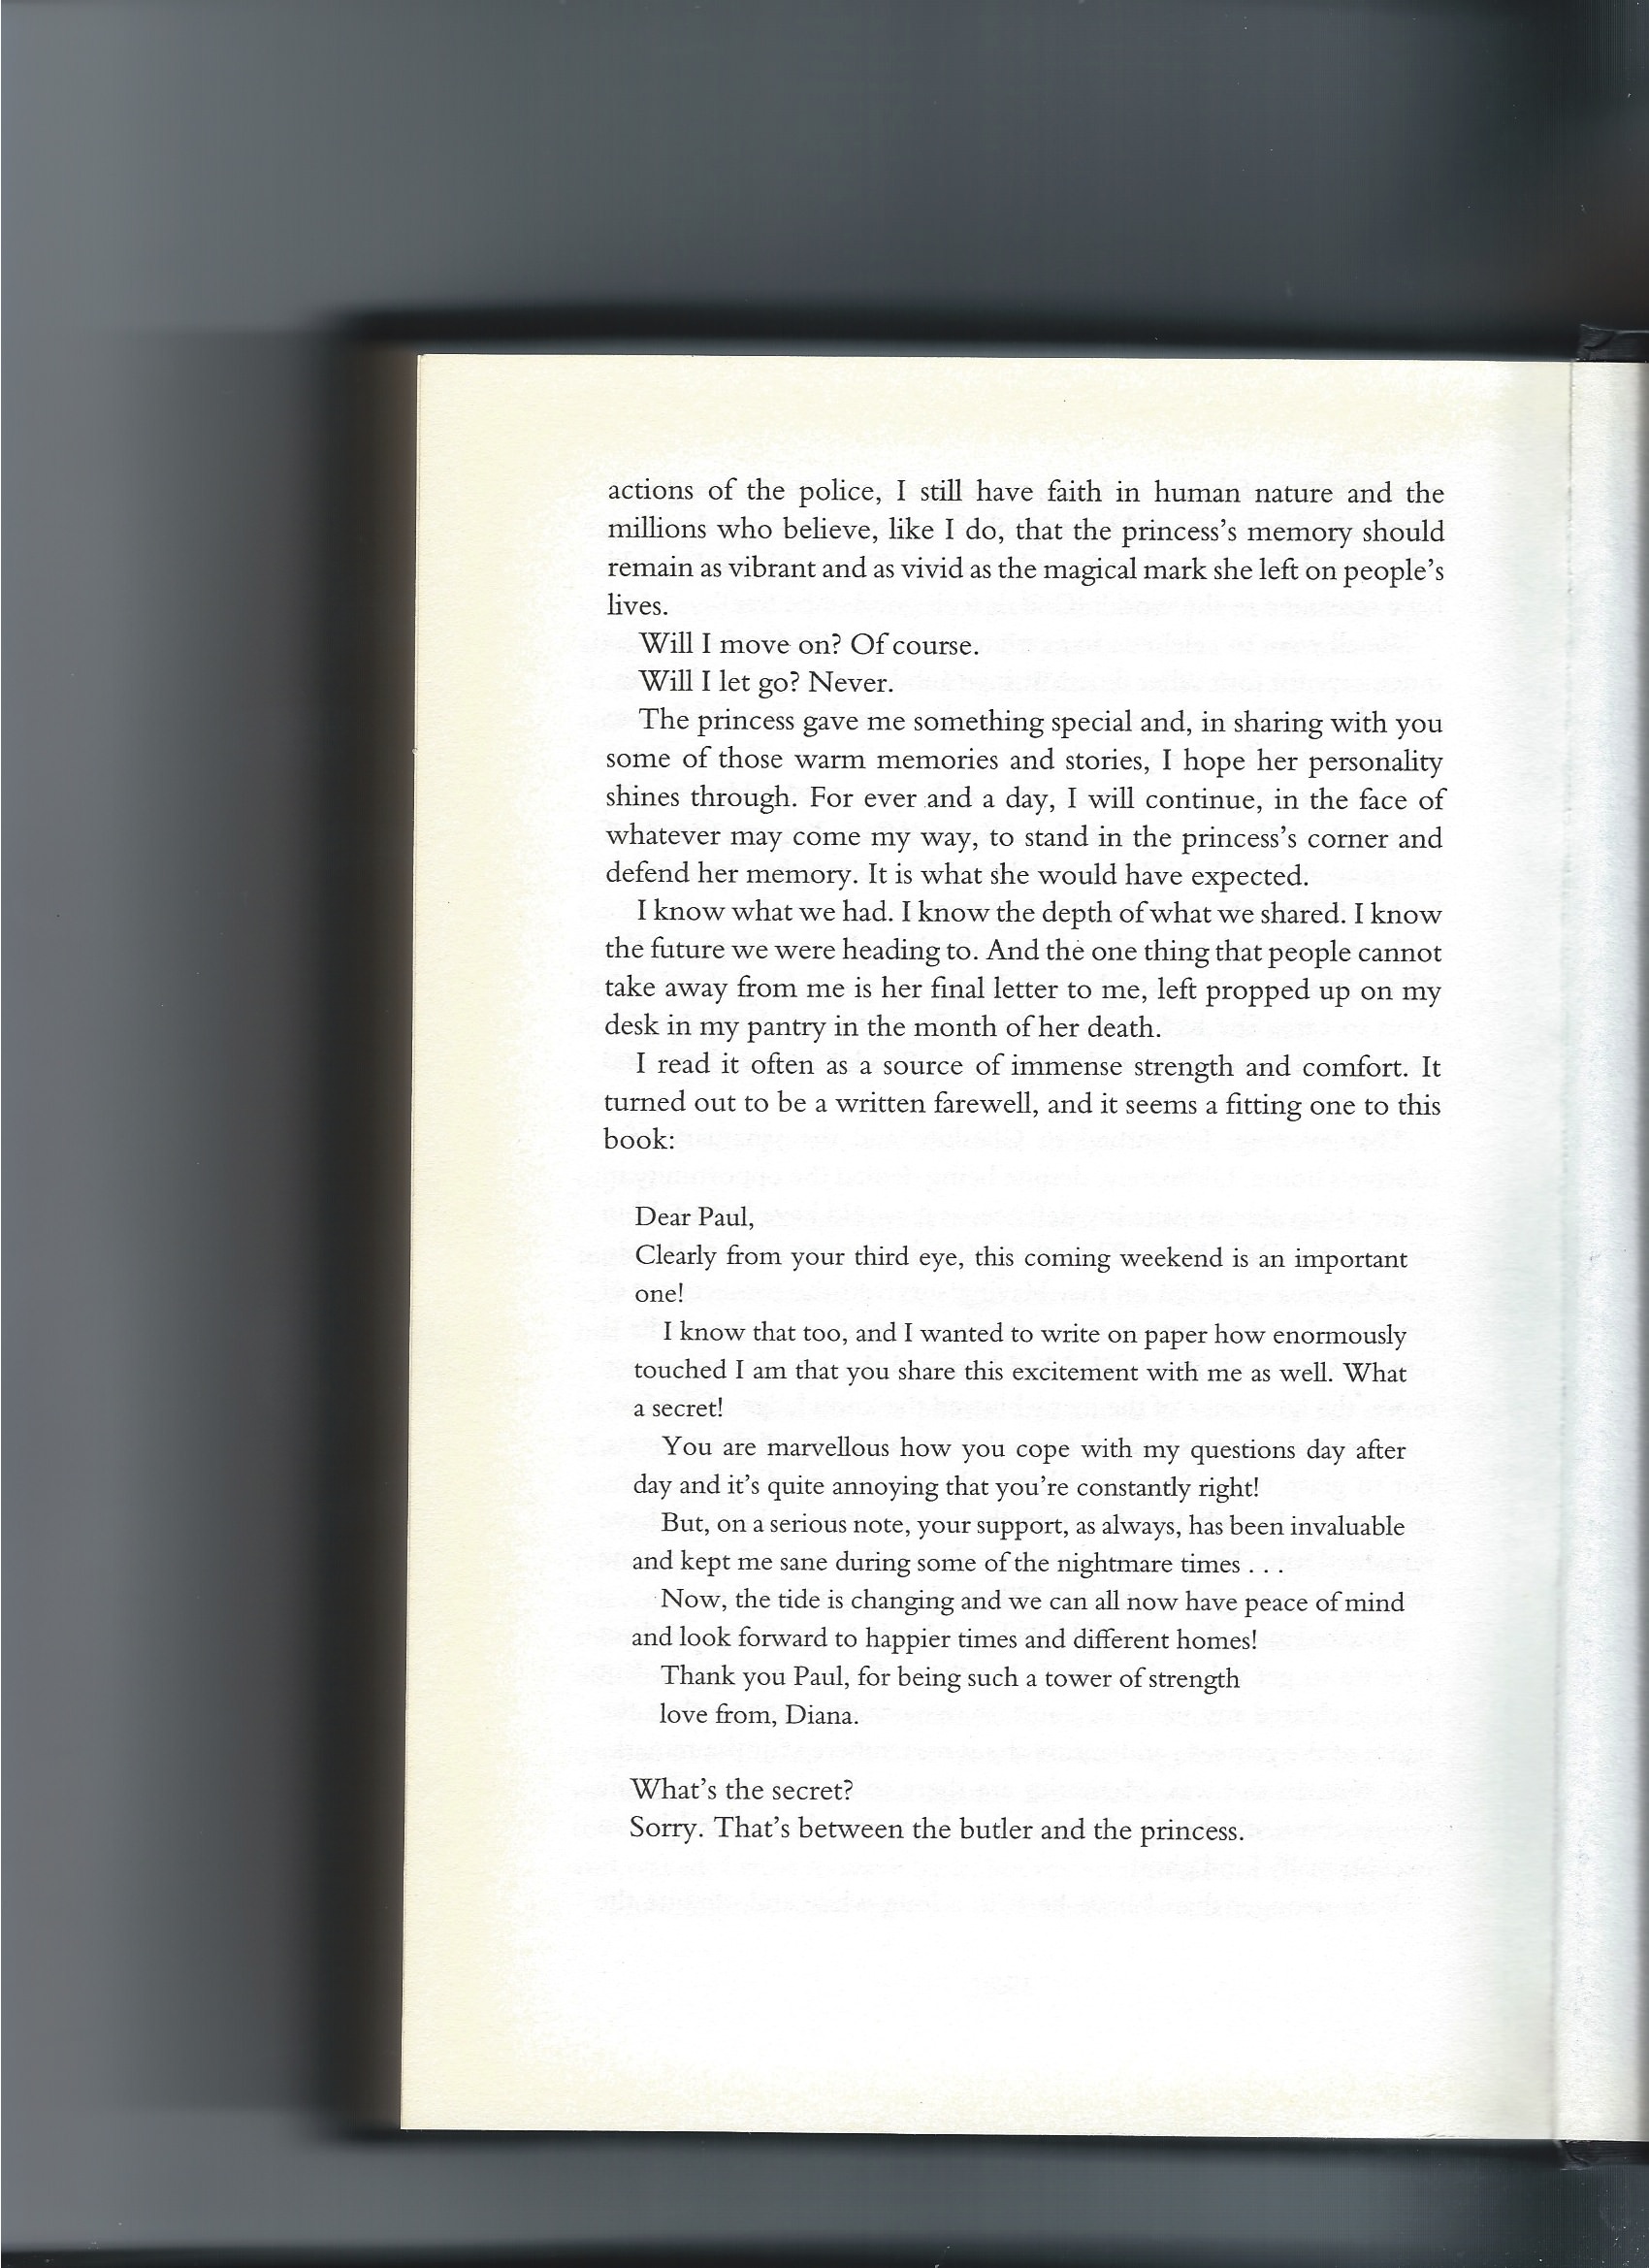 pagina 287 en 455 - Brief (Engels) van prinses aan butler - boek koninklijke dienst pagina 396 - Koninklijk Complot - Het mysterie rond de dood van Diana